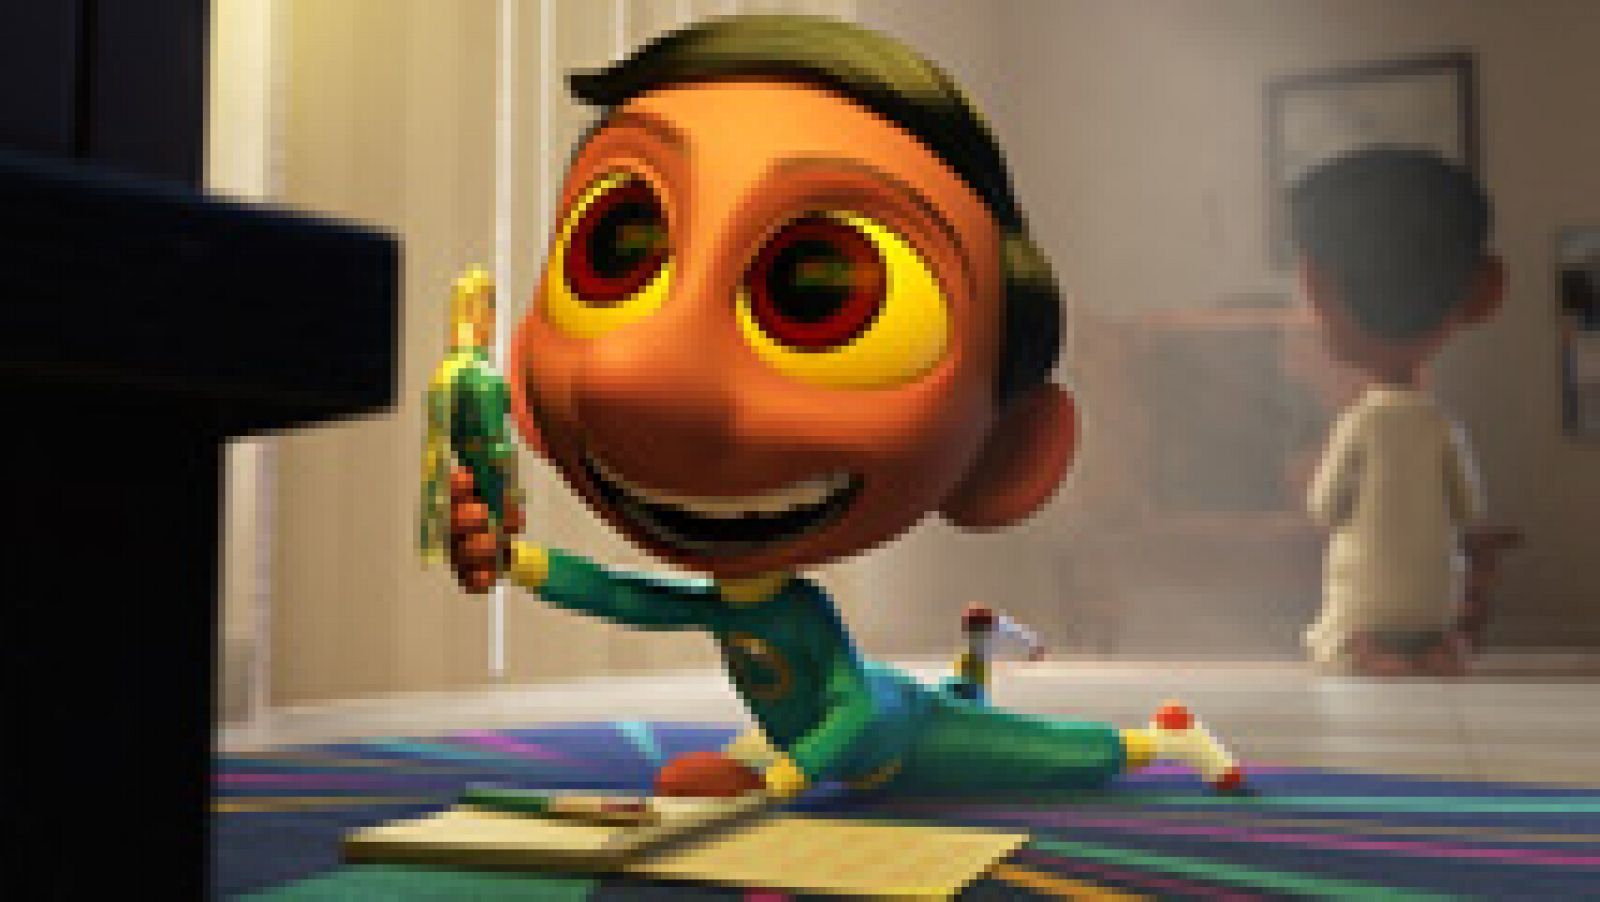 Sanjay's Super Team es el título del cortometraje que acompañará el estreno de El viaje de Arlo, la próxima cinta de Pixar que llega a las pantallas el 27 de noviembre.